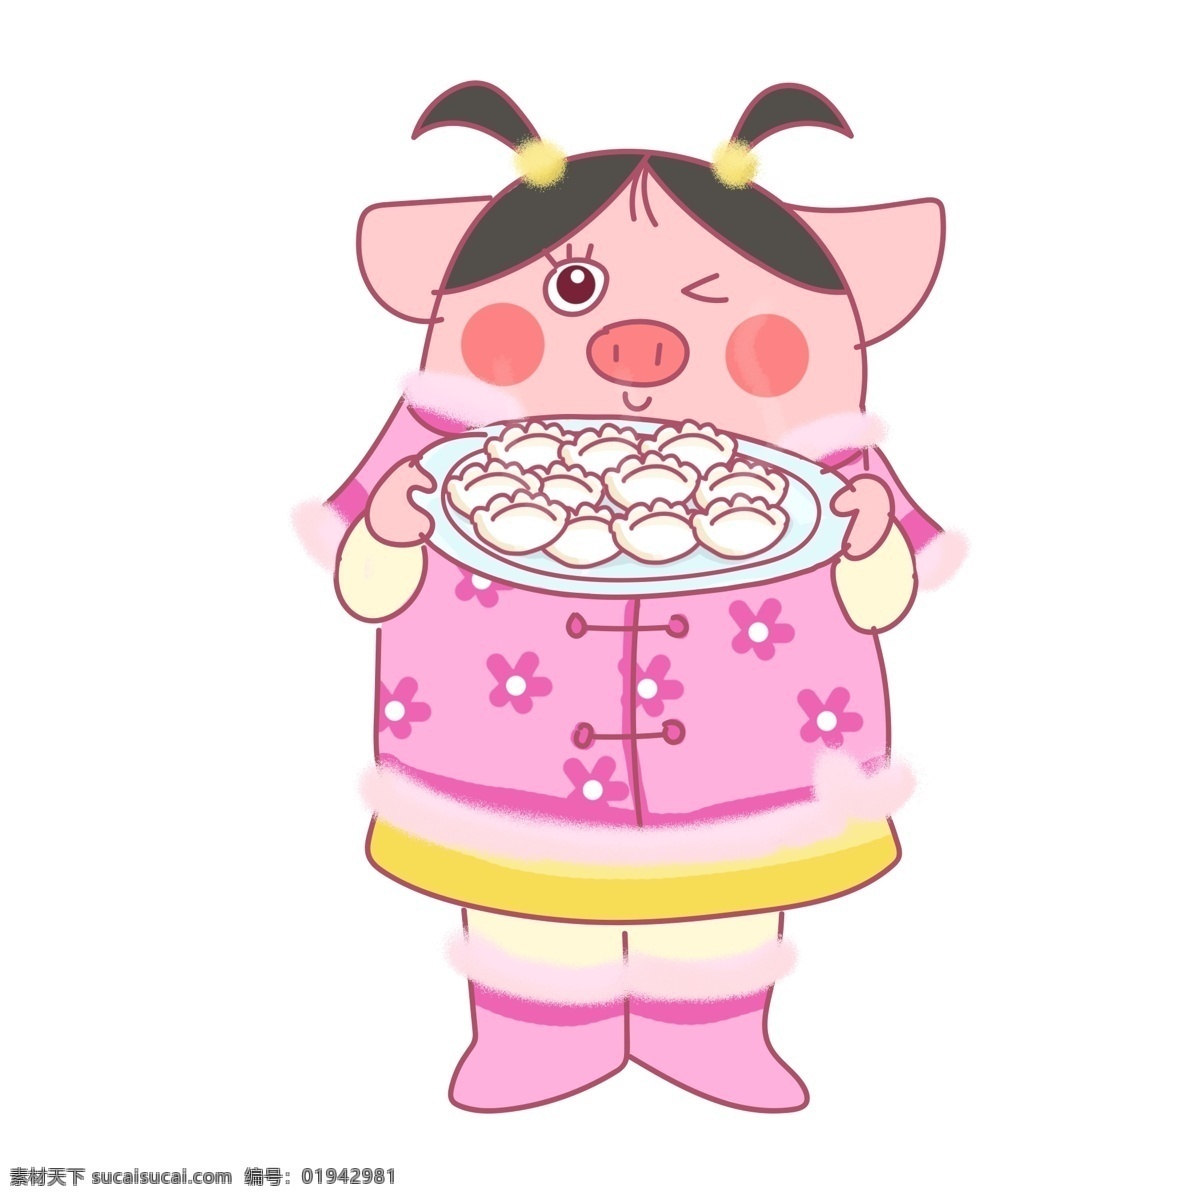 猪年 猪 春节 过年 饺子 可爱 卡通 原创 插画 元素 粉色 水饺